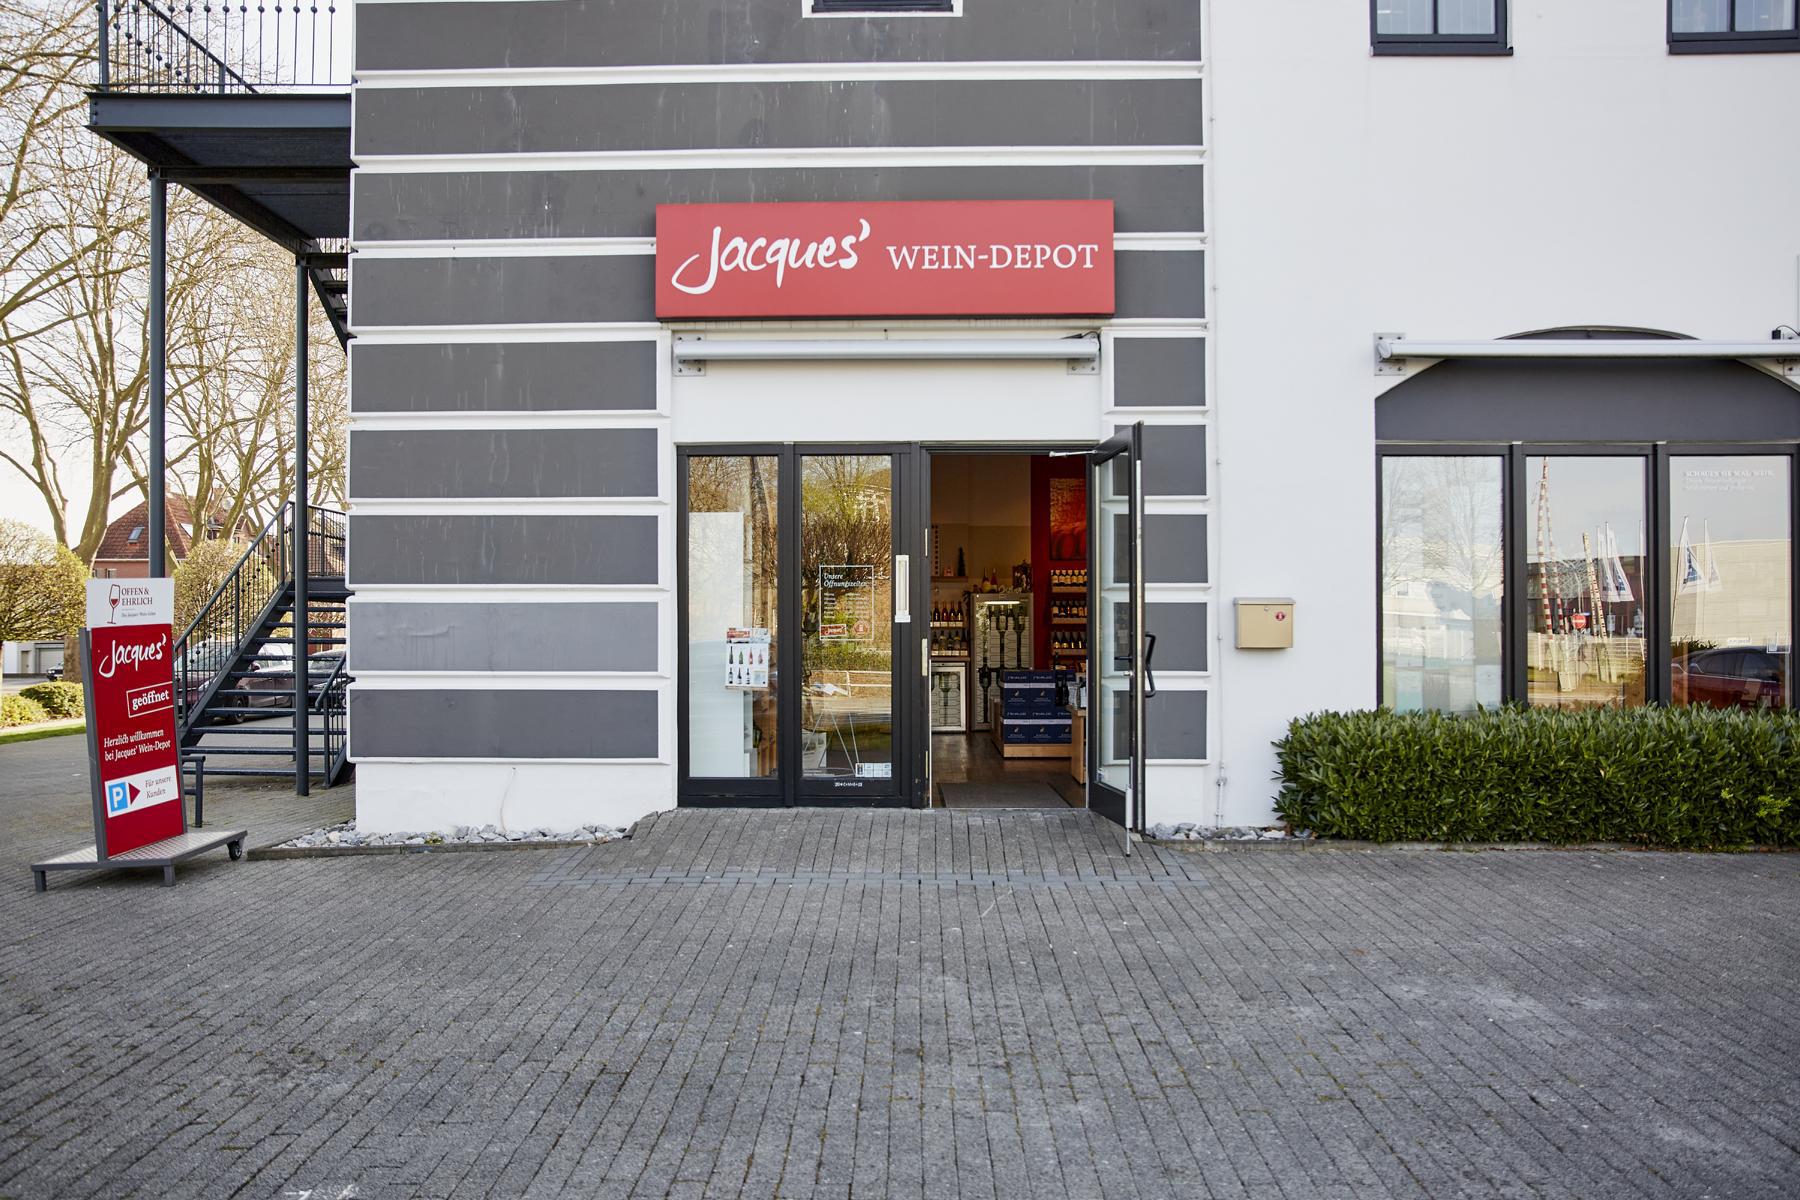 Bild 2 Jacques’ Wein-Depot Lippstadt in Lippstadt